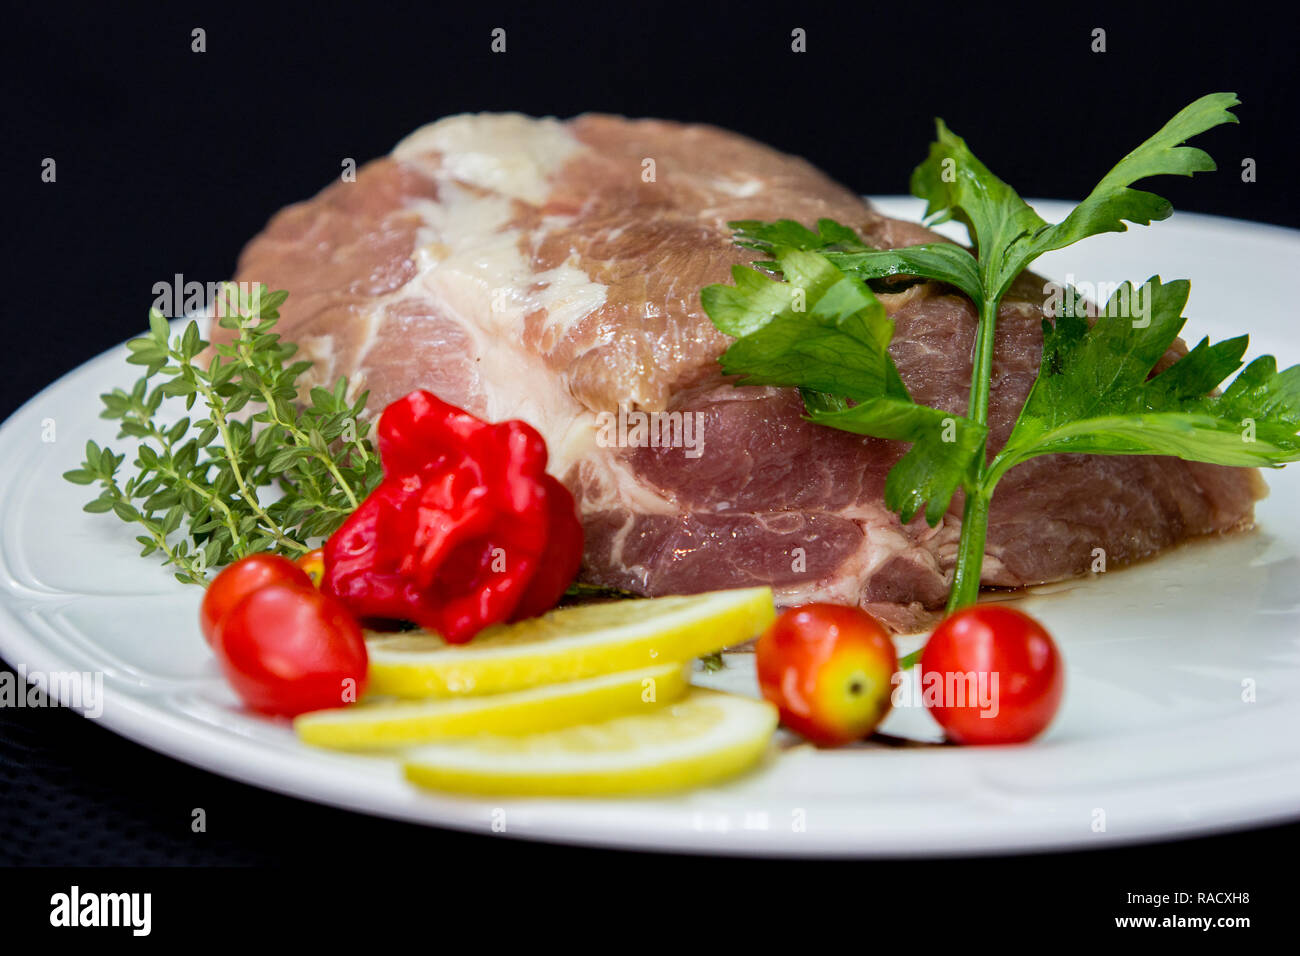 La viande de buffle crus crus prêts à cuire dans une plaque blanche avec des tomates, du citron et des herbes d'un fond noir. Banque D'Images